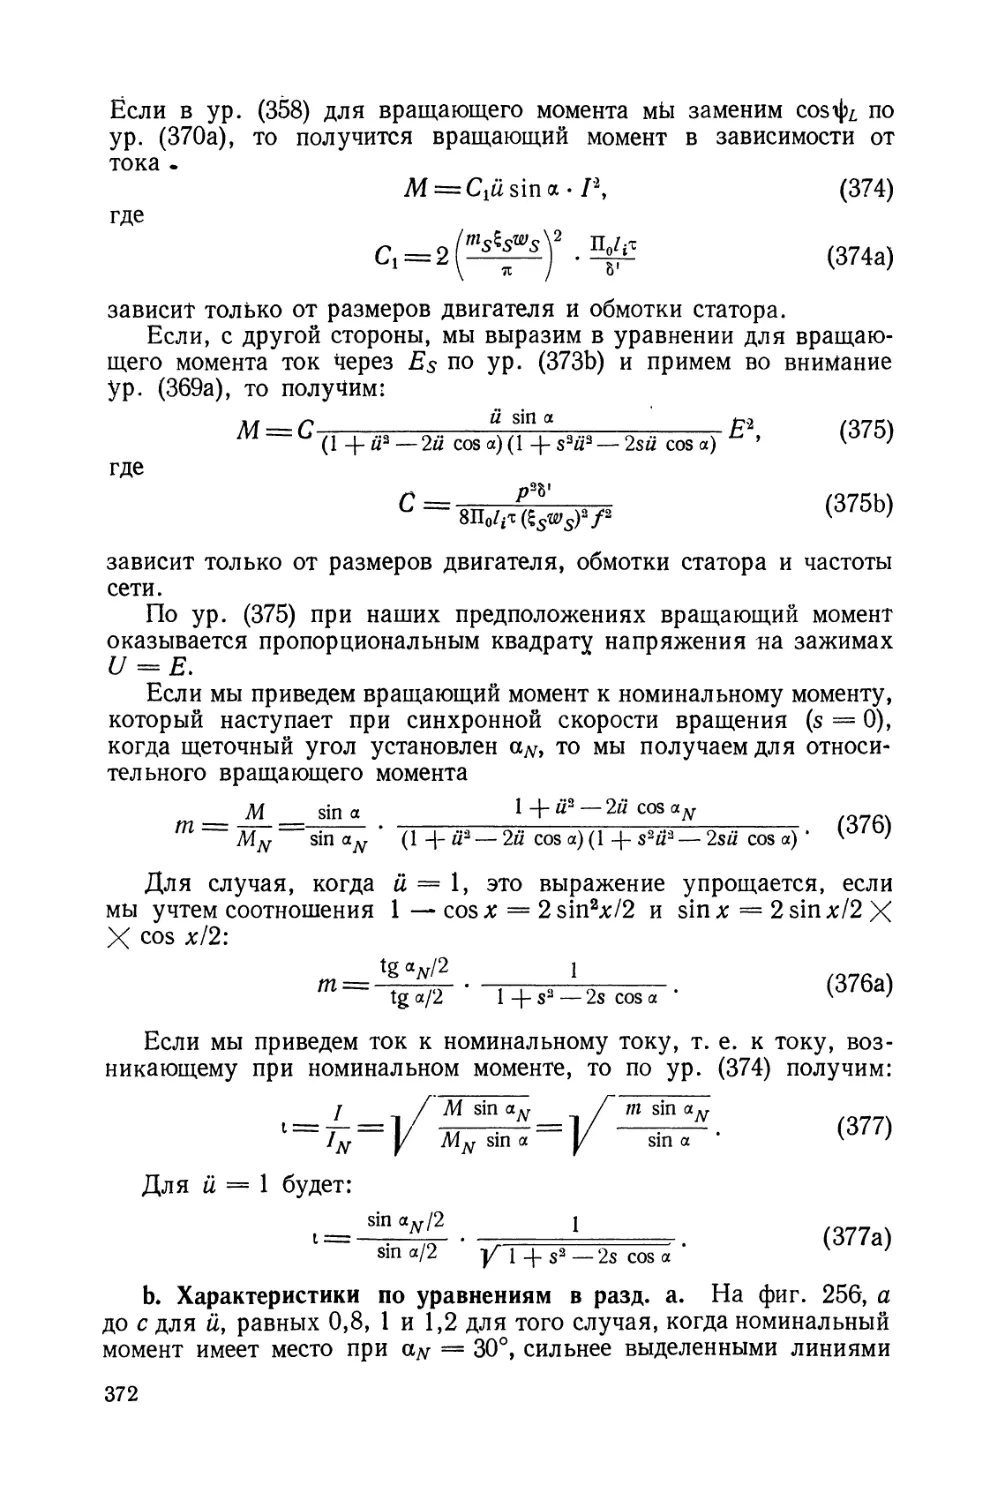 b. Характеристики по уравнениям в разд. а